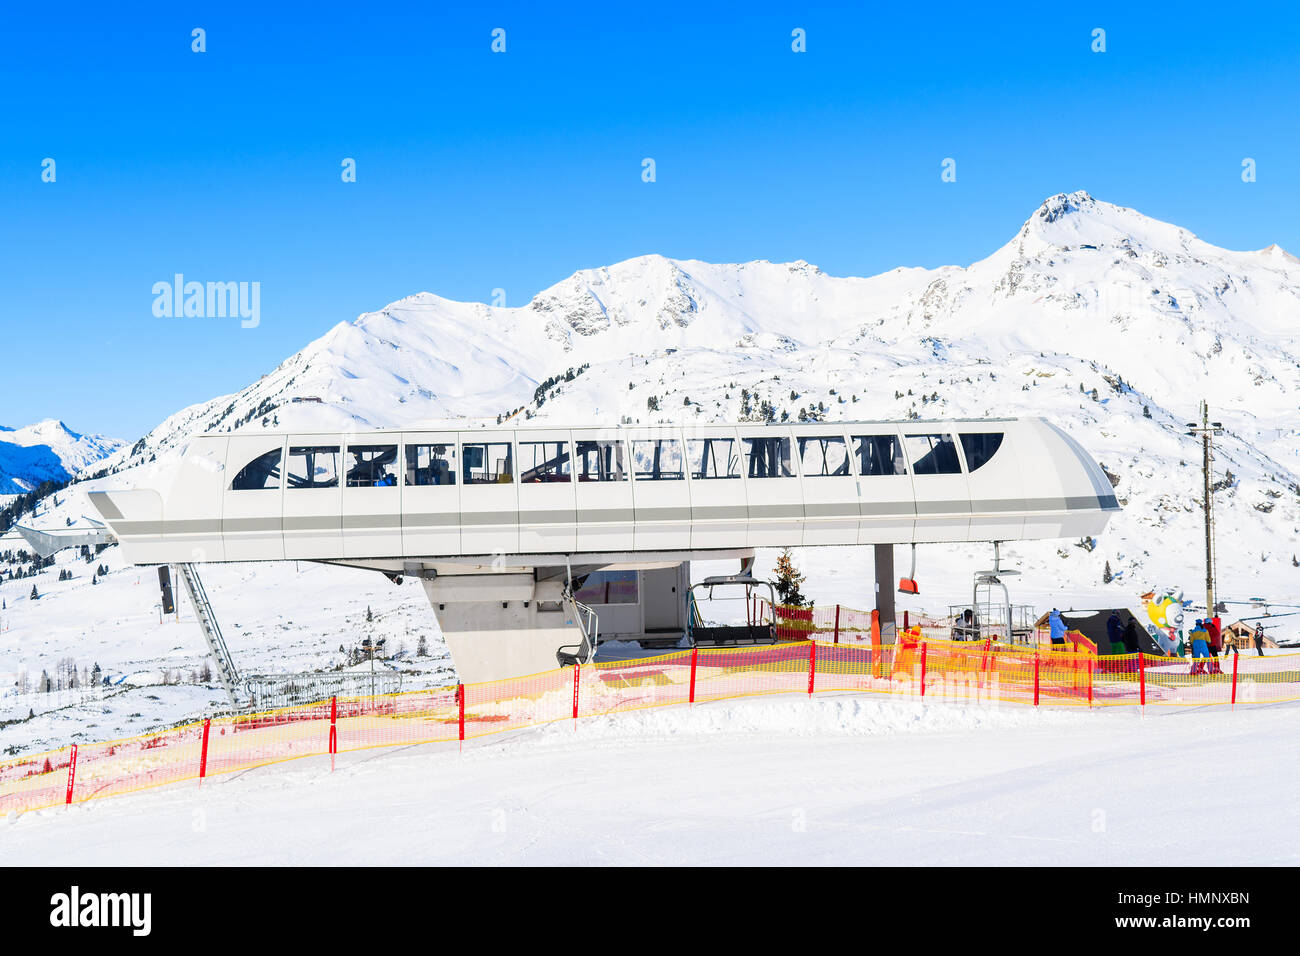 Dans la station de télésiège de ski Obertauern, Autriche Banque D'Images